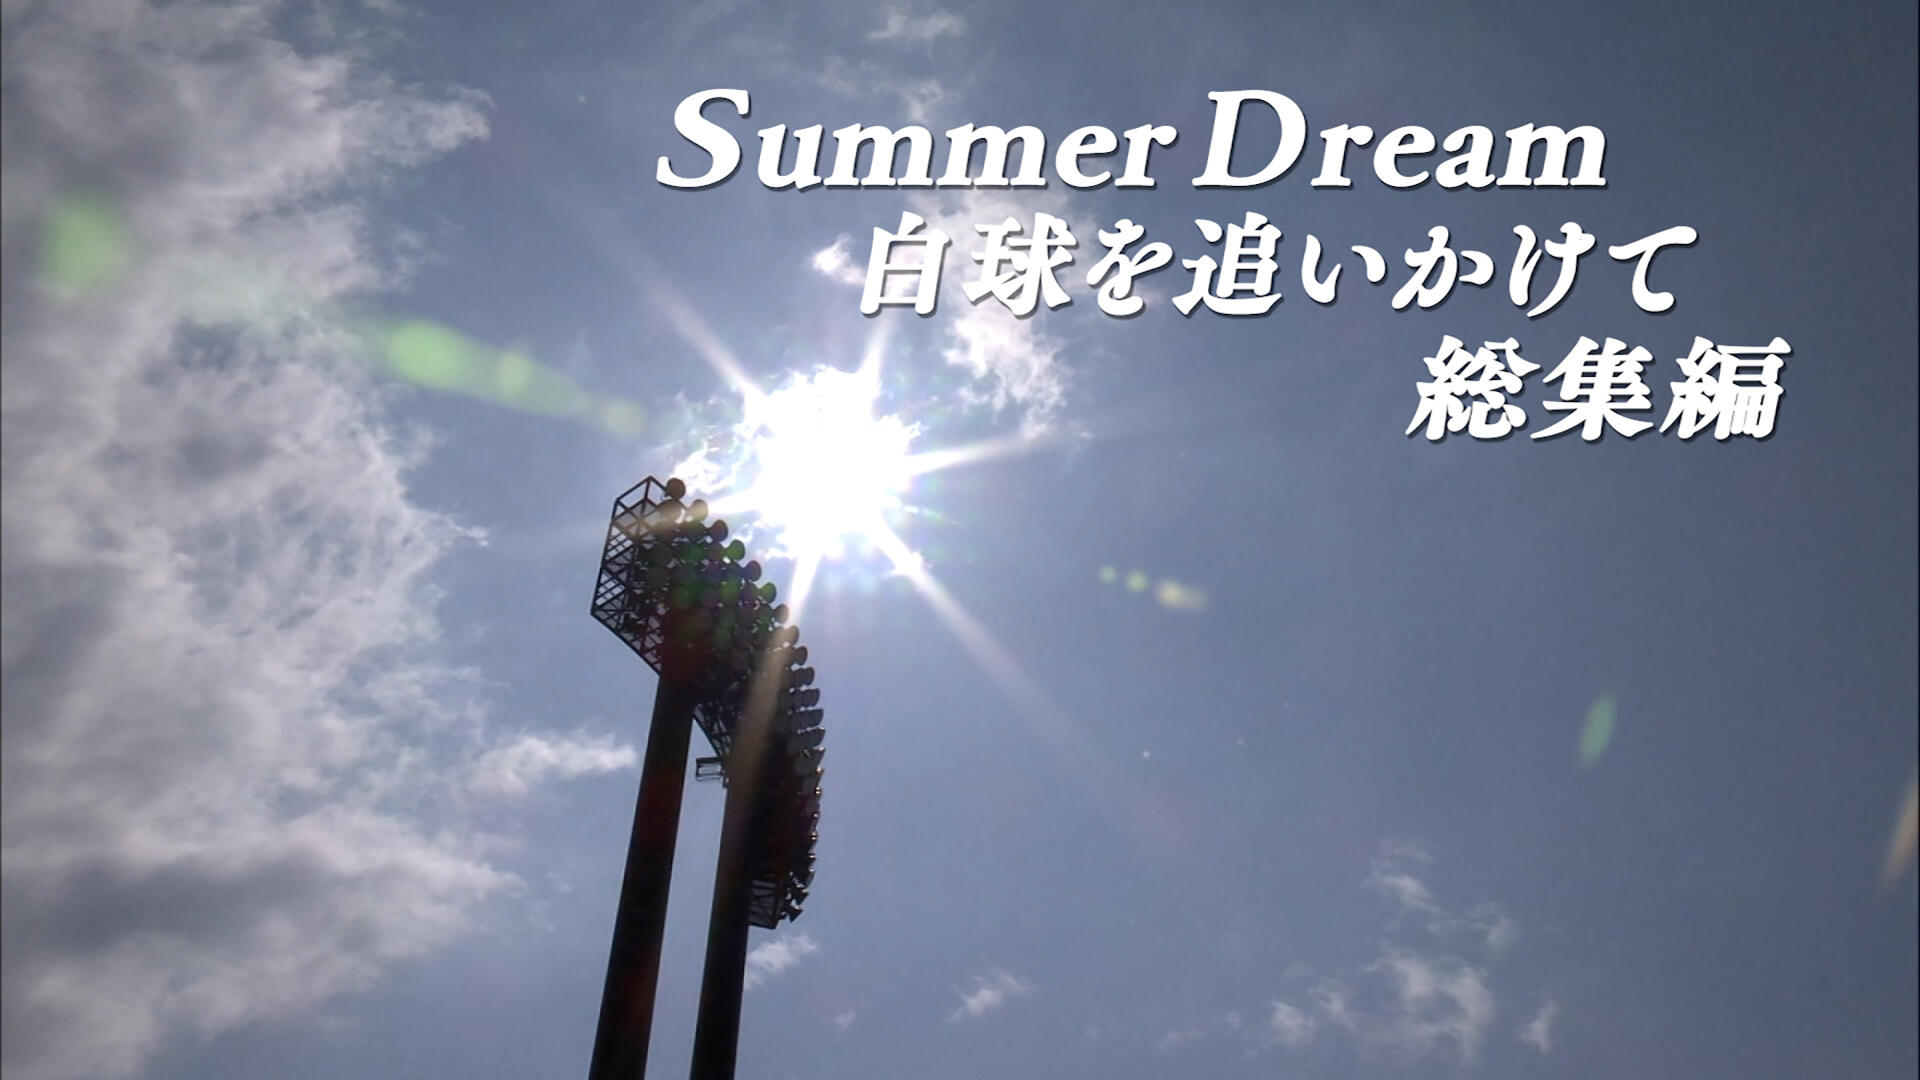 Summer Dream 白球を追いかけて